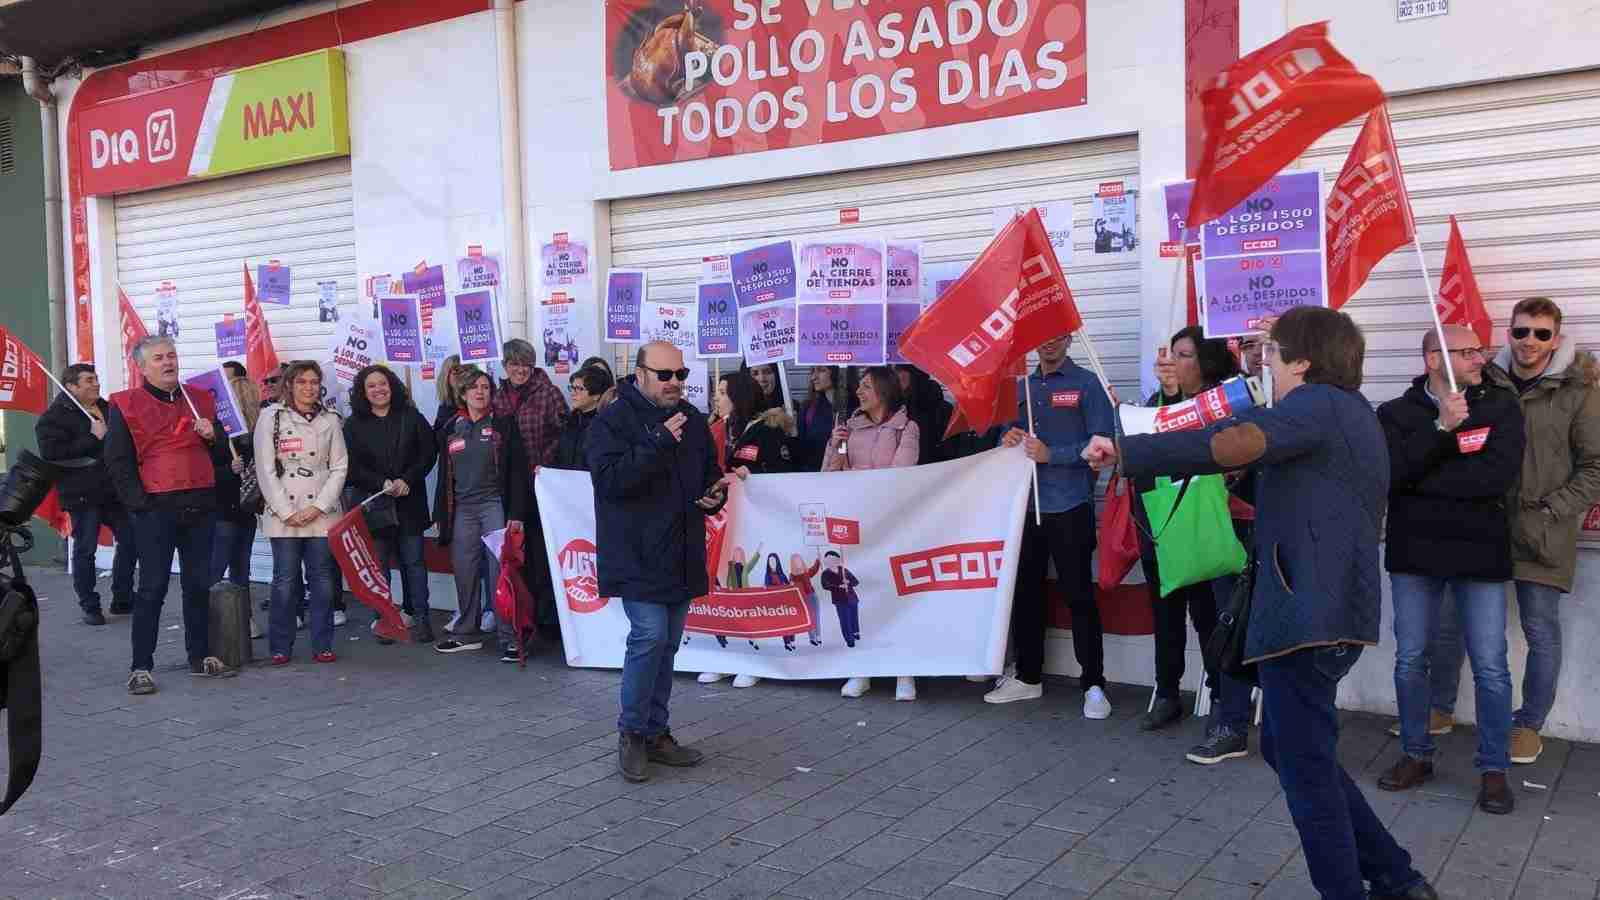 Éxito rotundo en CLM de los paros convocados por CCOO-Servicios contra el ERE de las tiendas DIA 3